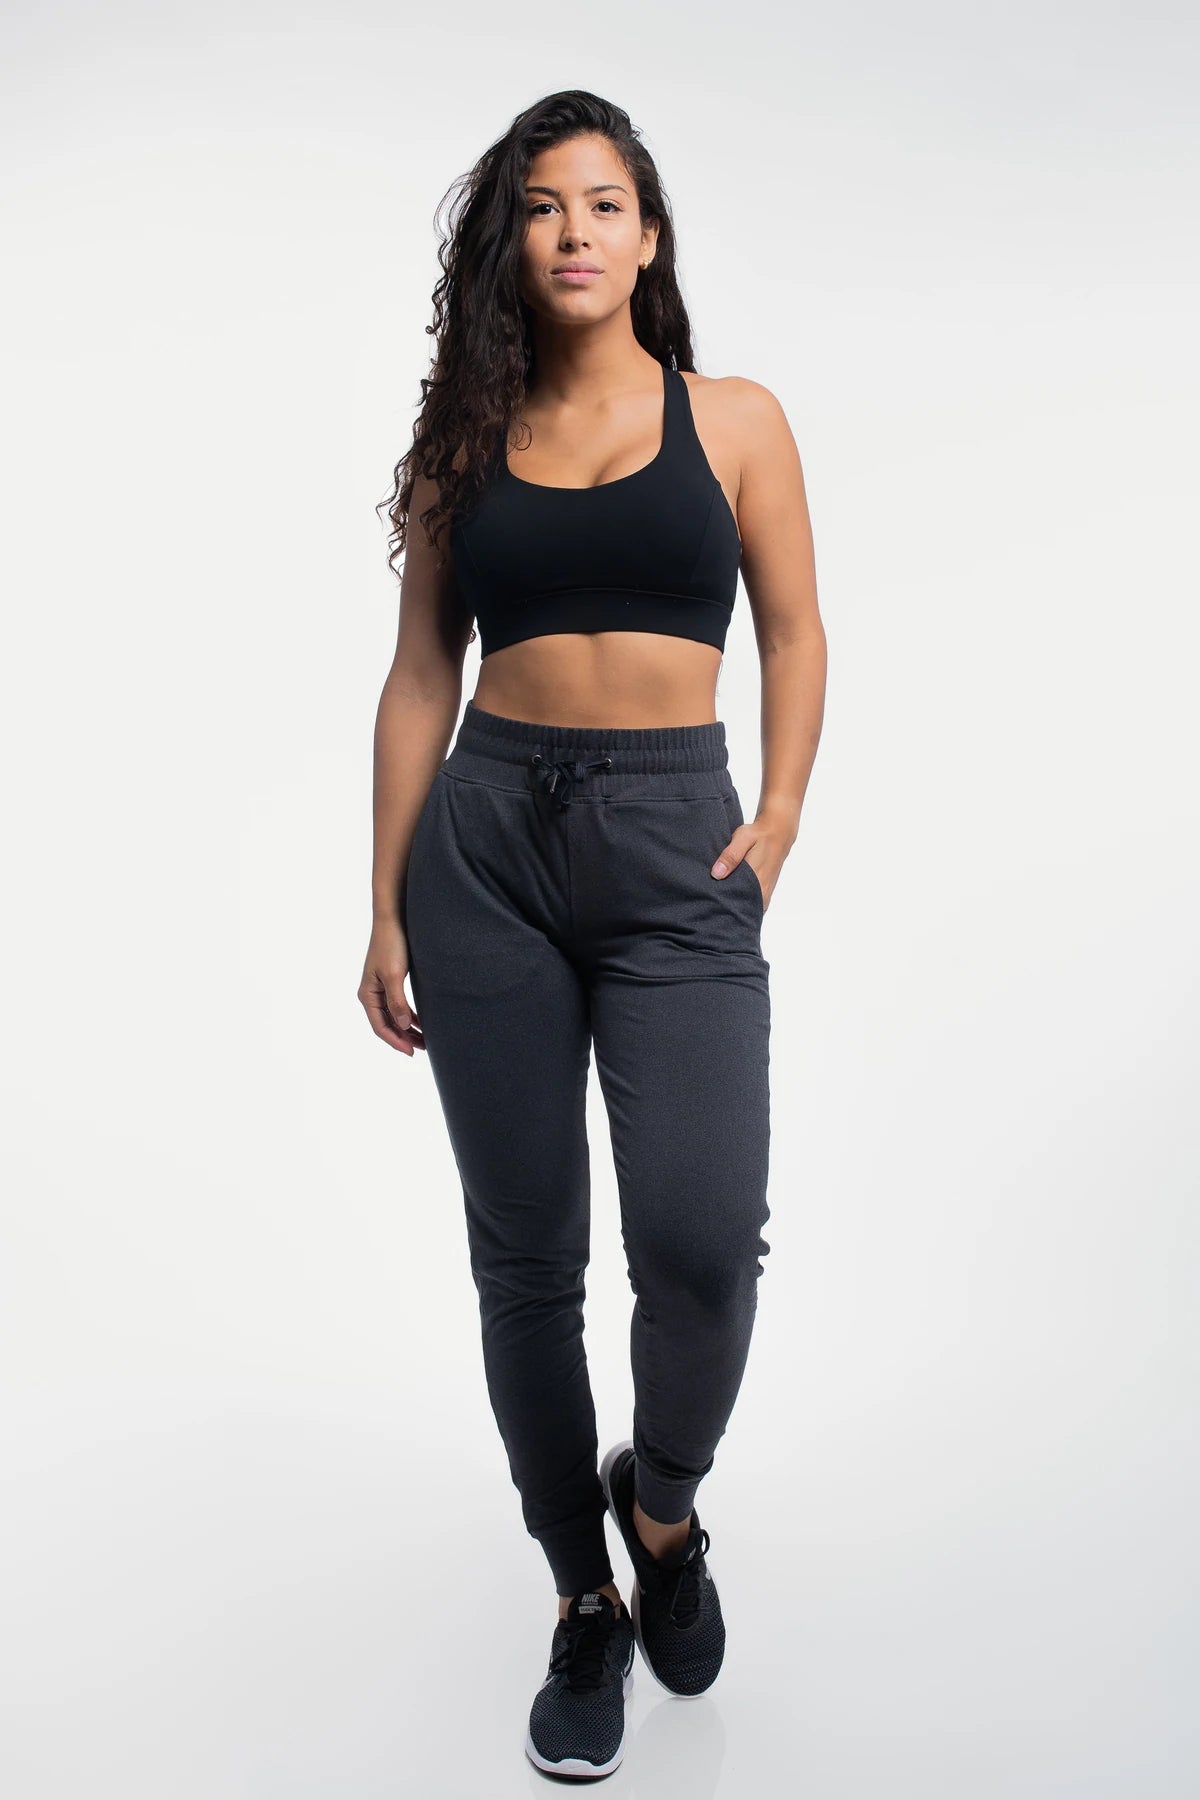 Women's Black Jogger Sweatpants  Bara Sportswear– BARA Sportswear